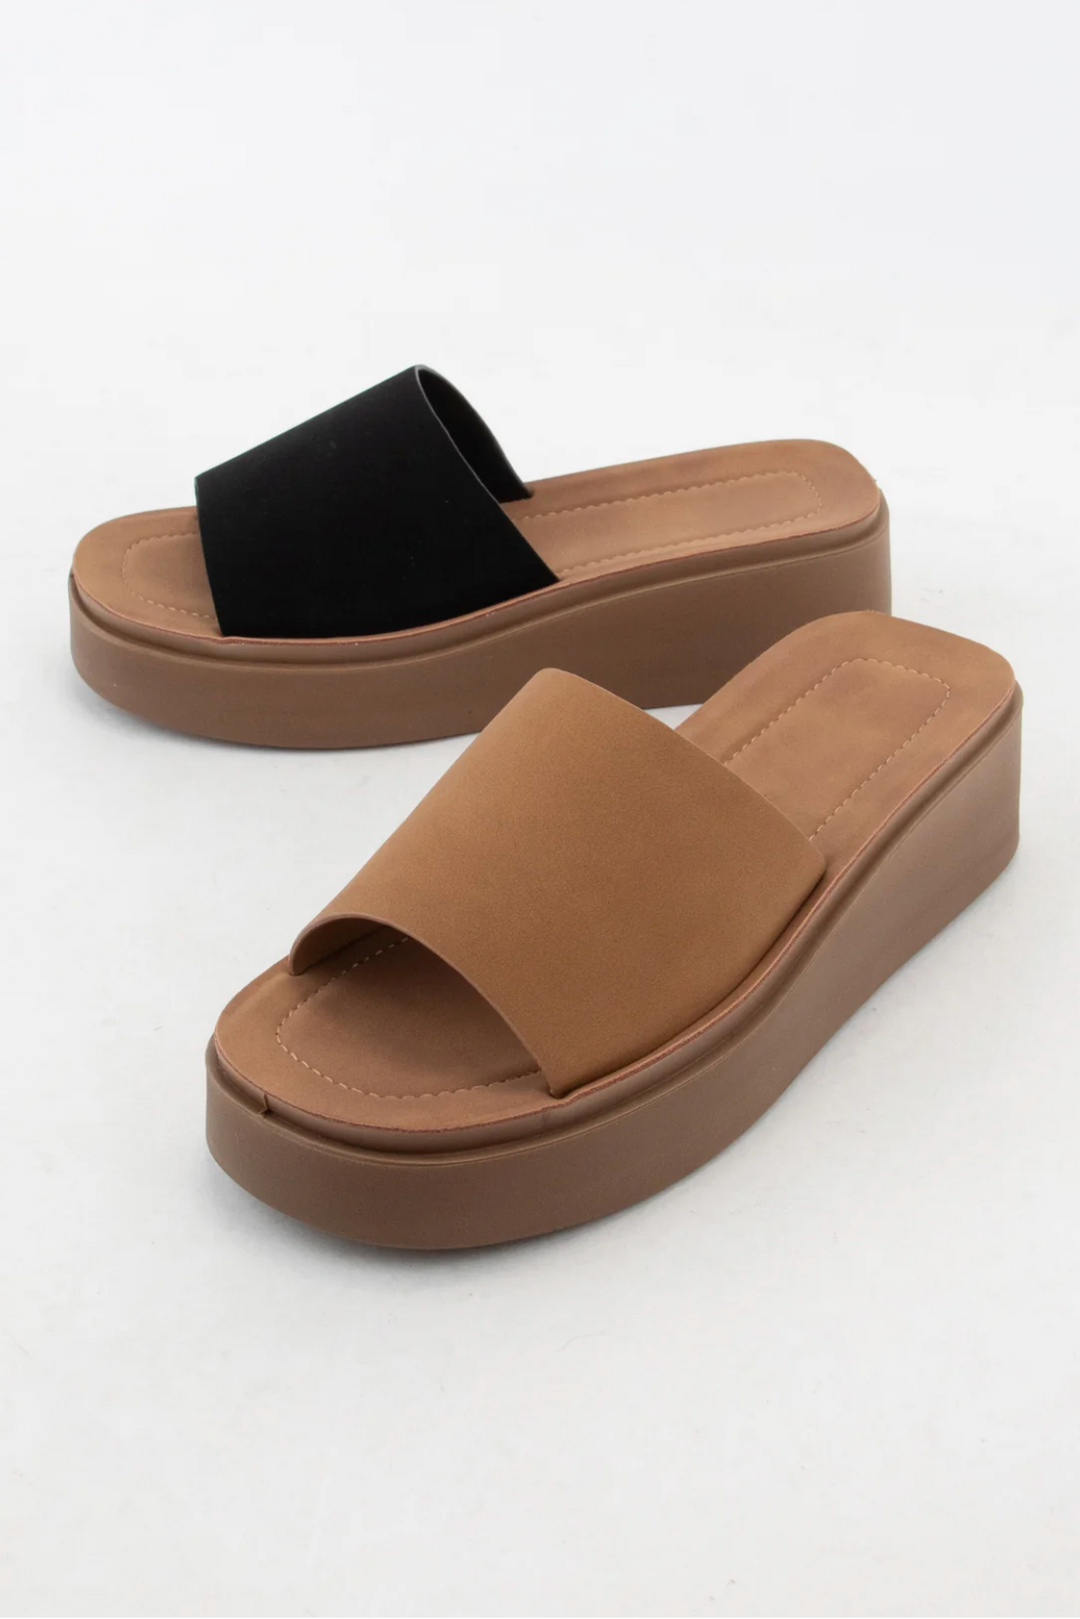 Java Slip On Sandals - ShopSpoiled